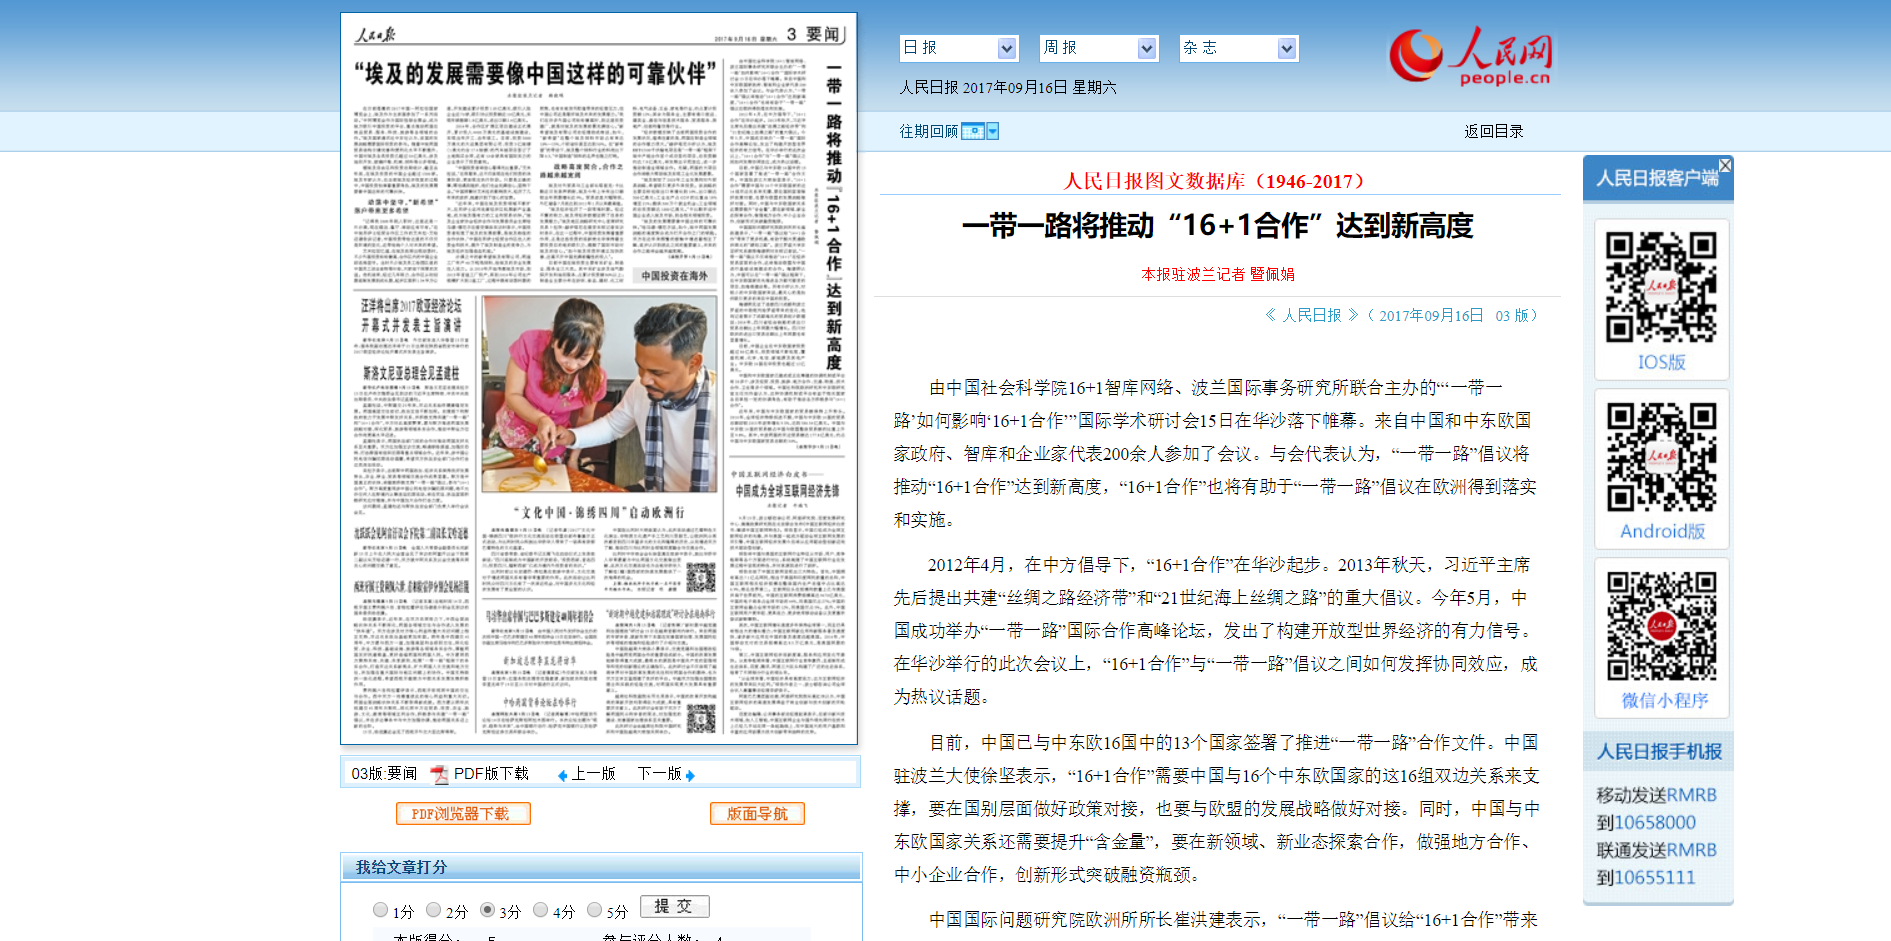 Zrzut ekranu chińskiej strony internetowej Dziennika Ludowego/Screenshot of the Chinese website